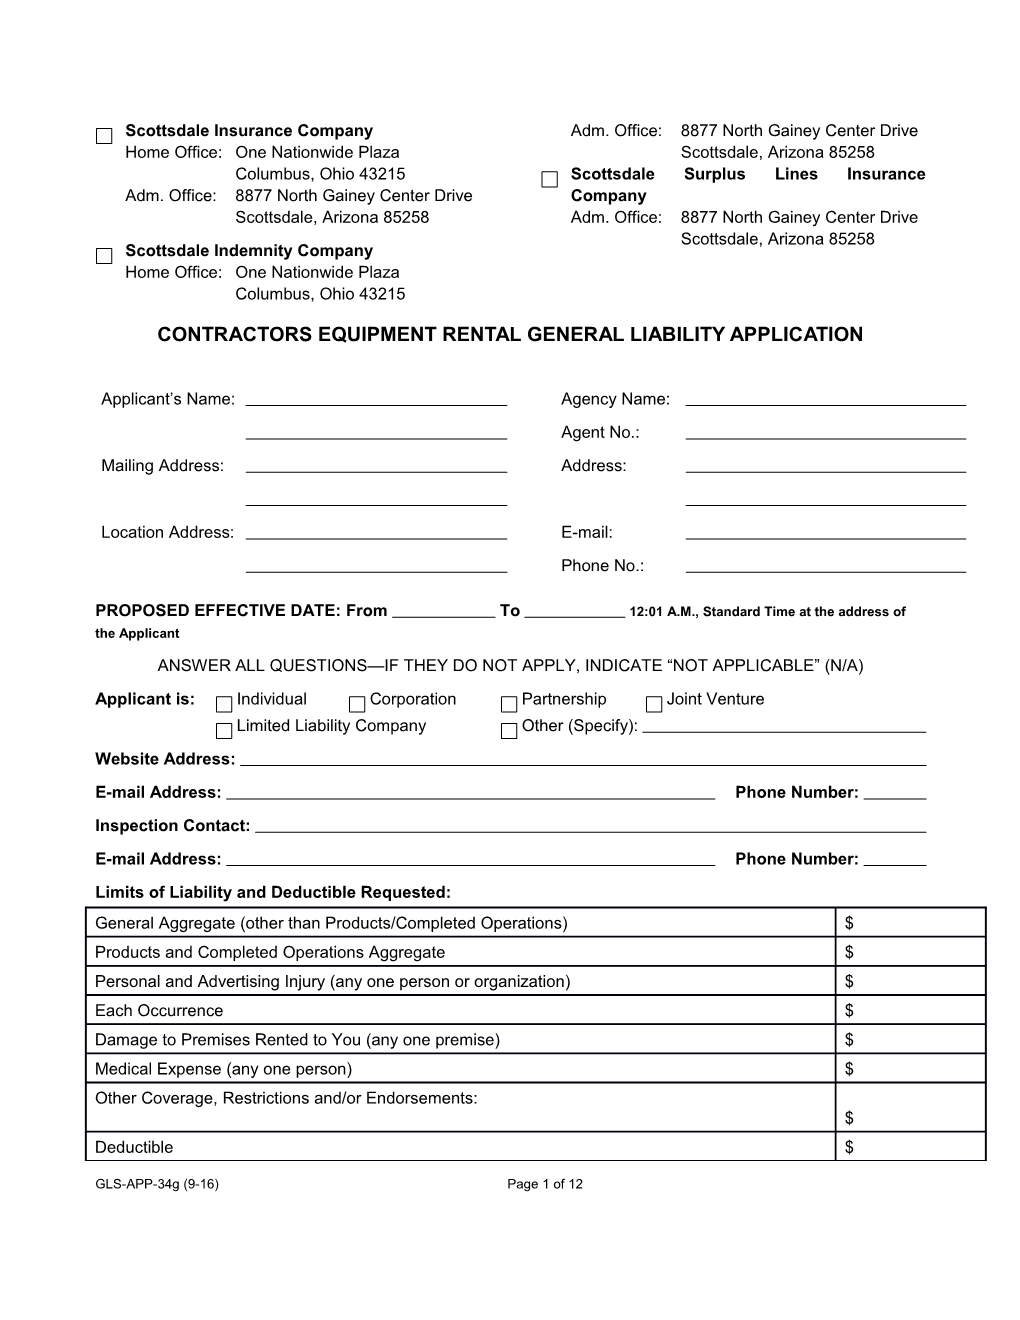 Contractors Equipment Rental General Liability Applicaiton